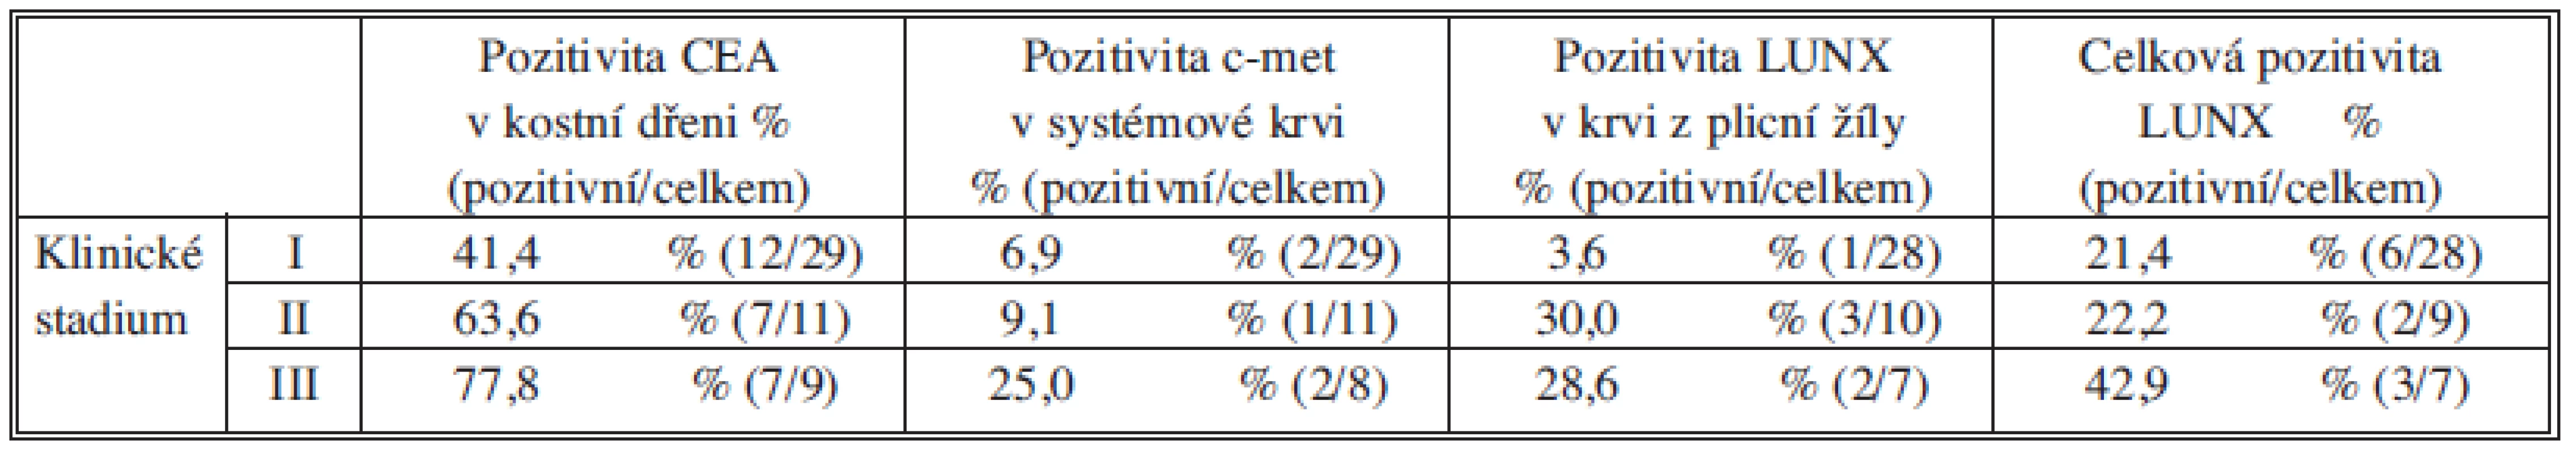 Procentuální zastoupení MSD pozitivních vzorků ve skupinách pacientů rozdělených dle klinického stadia
Tab. 3: The percentage representation of MSD positive samples in individual patient groups according to clinical stage